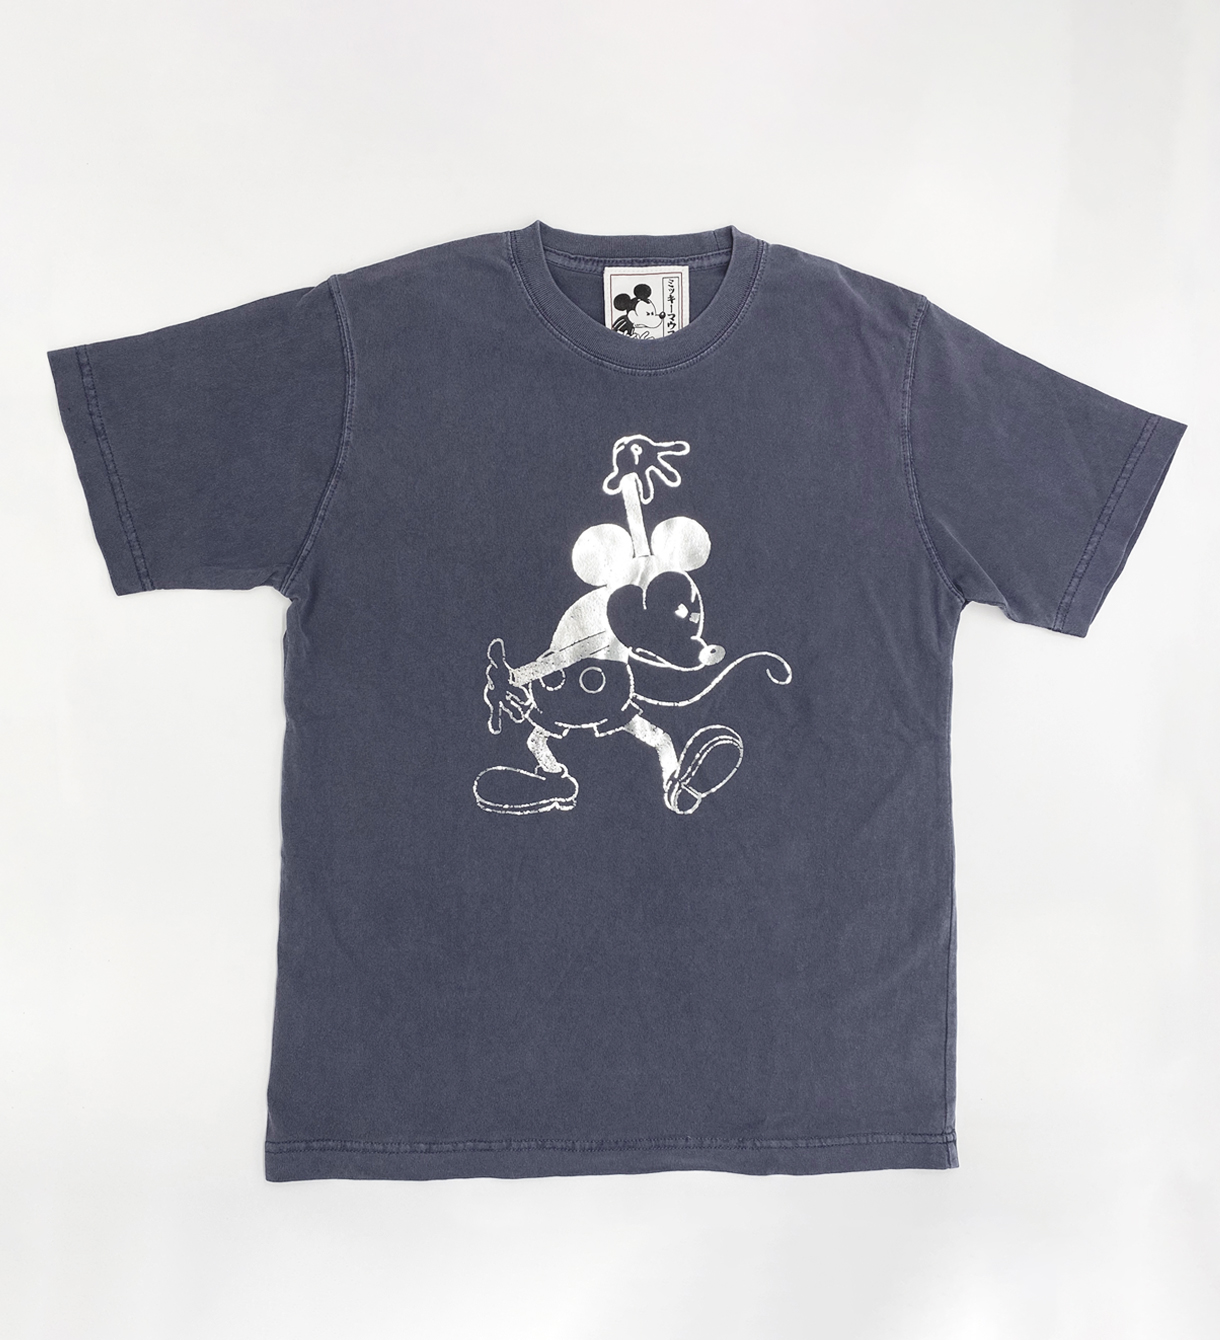 経典ブランド-ミッキーマウス プリント リンガー Tシャツ シング